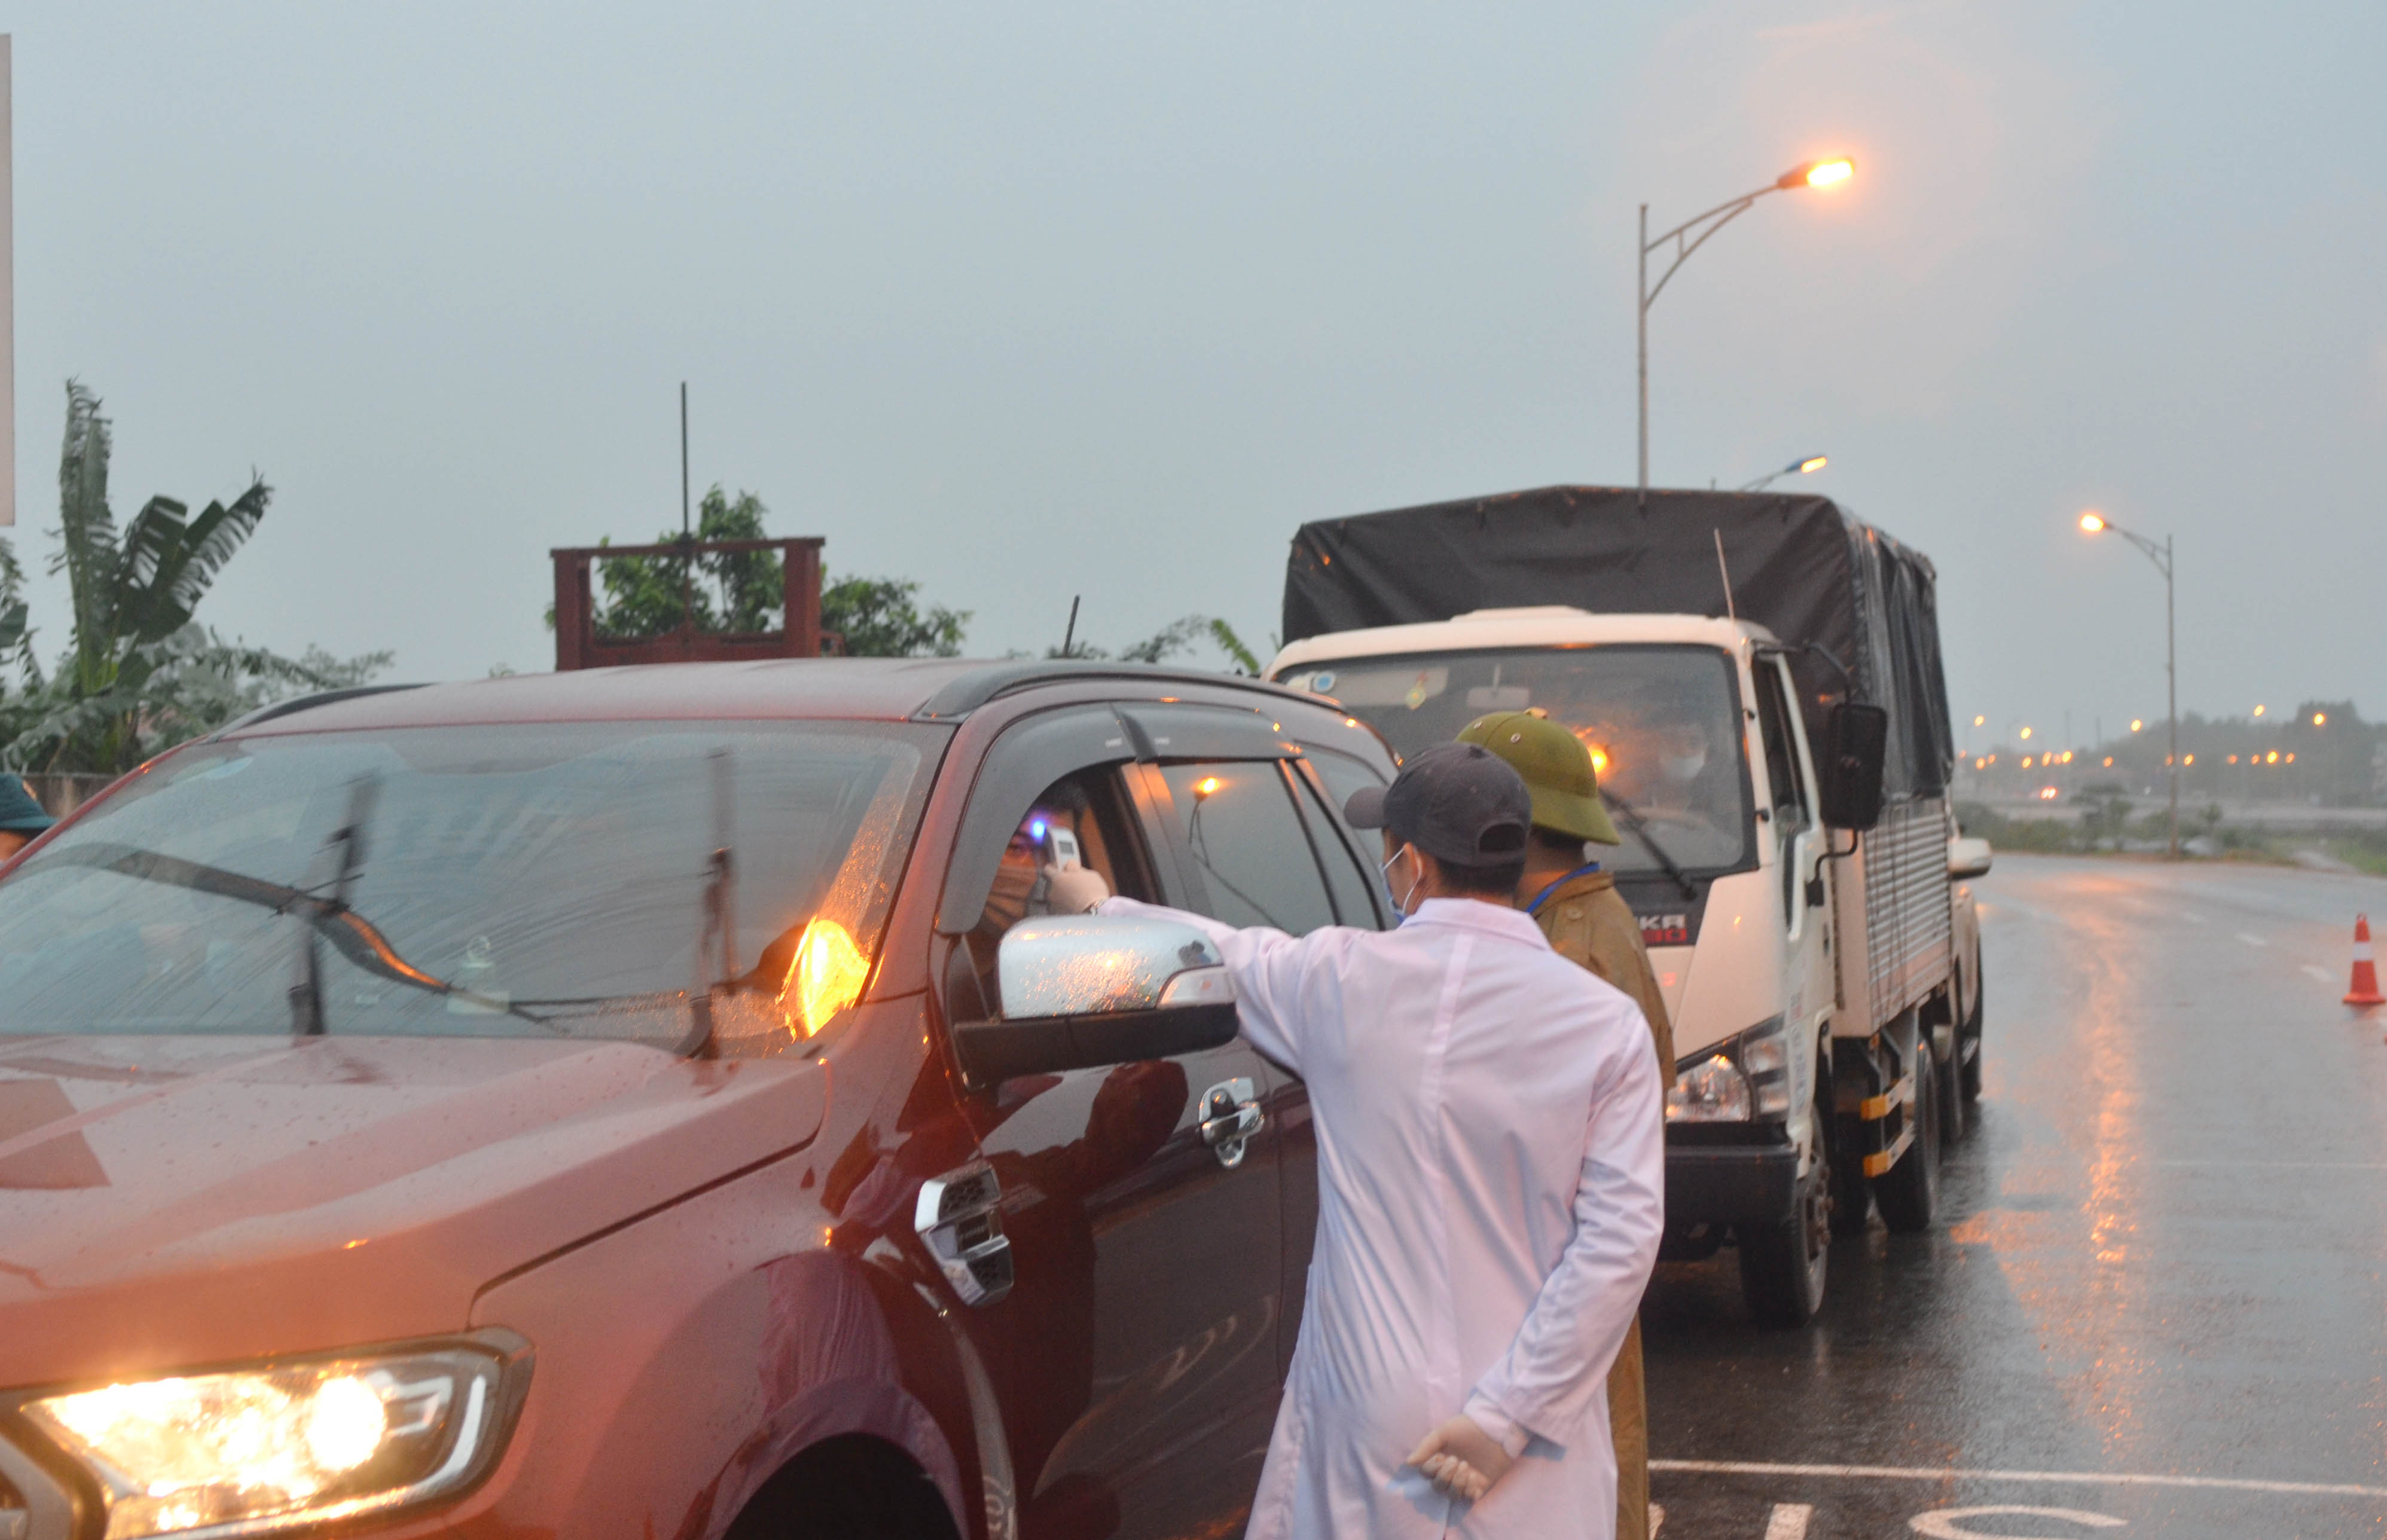 Cán bộ y tế kiểm tra thân nhiệt của người vào TX Quảng Yên tại chốt đường rẽ từ cao tốc Hạ Long - Hải Phòng xuống thị xã.